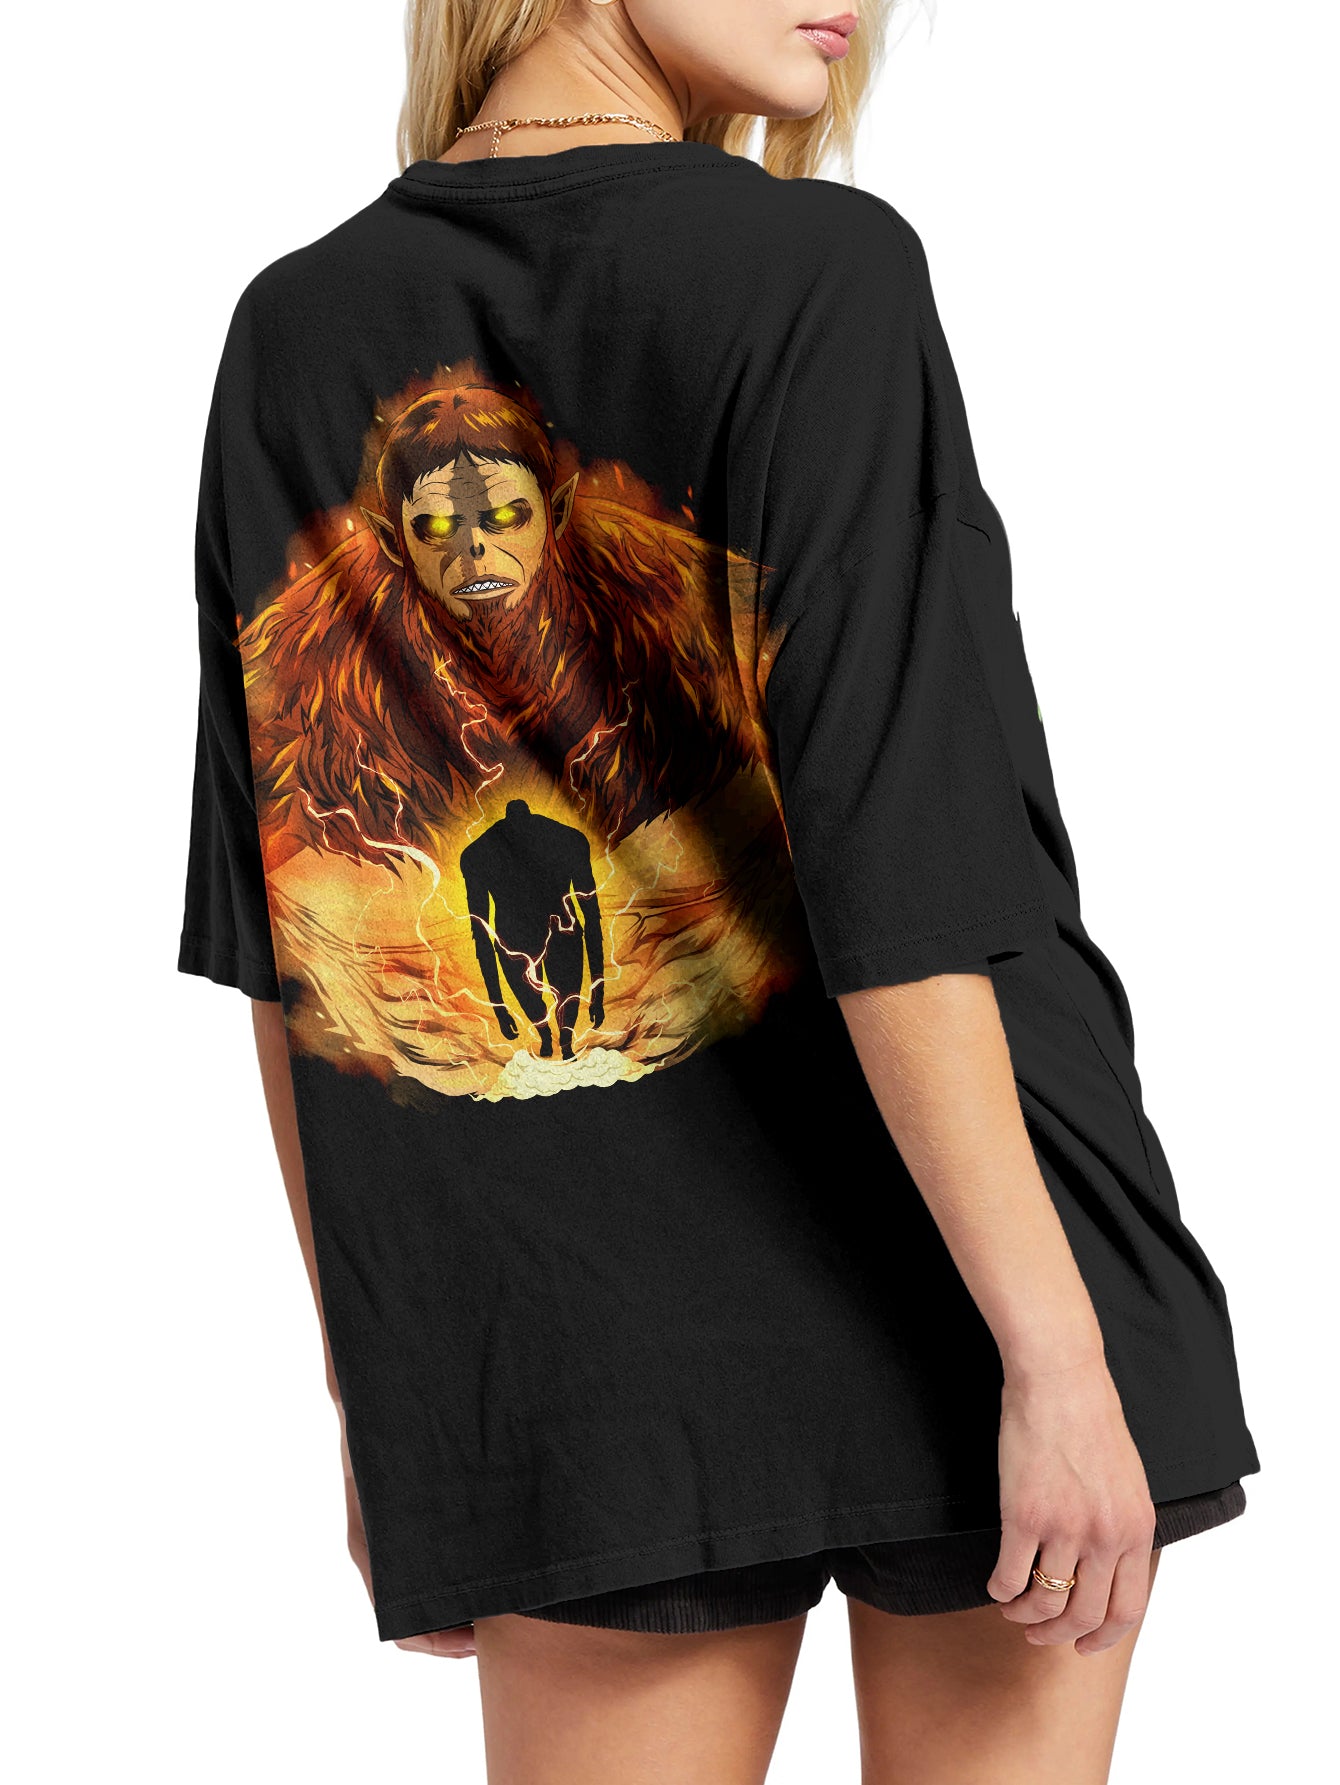 Beast Titan Urban Fashion Oversize T-Shirt